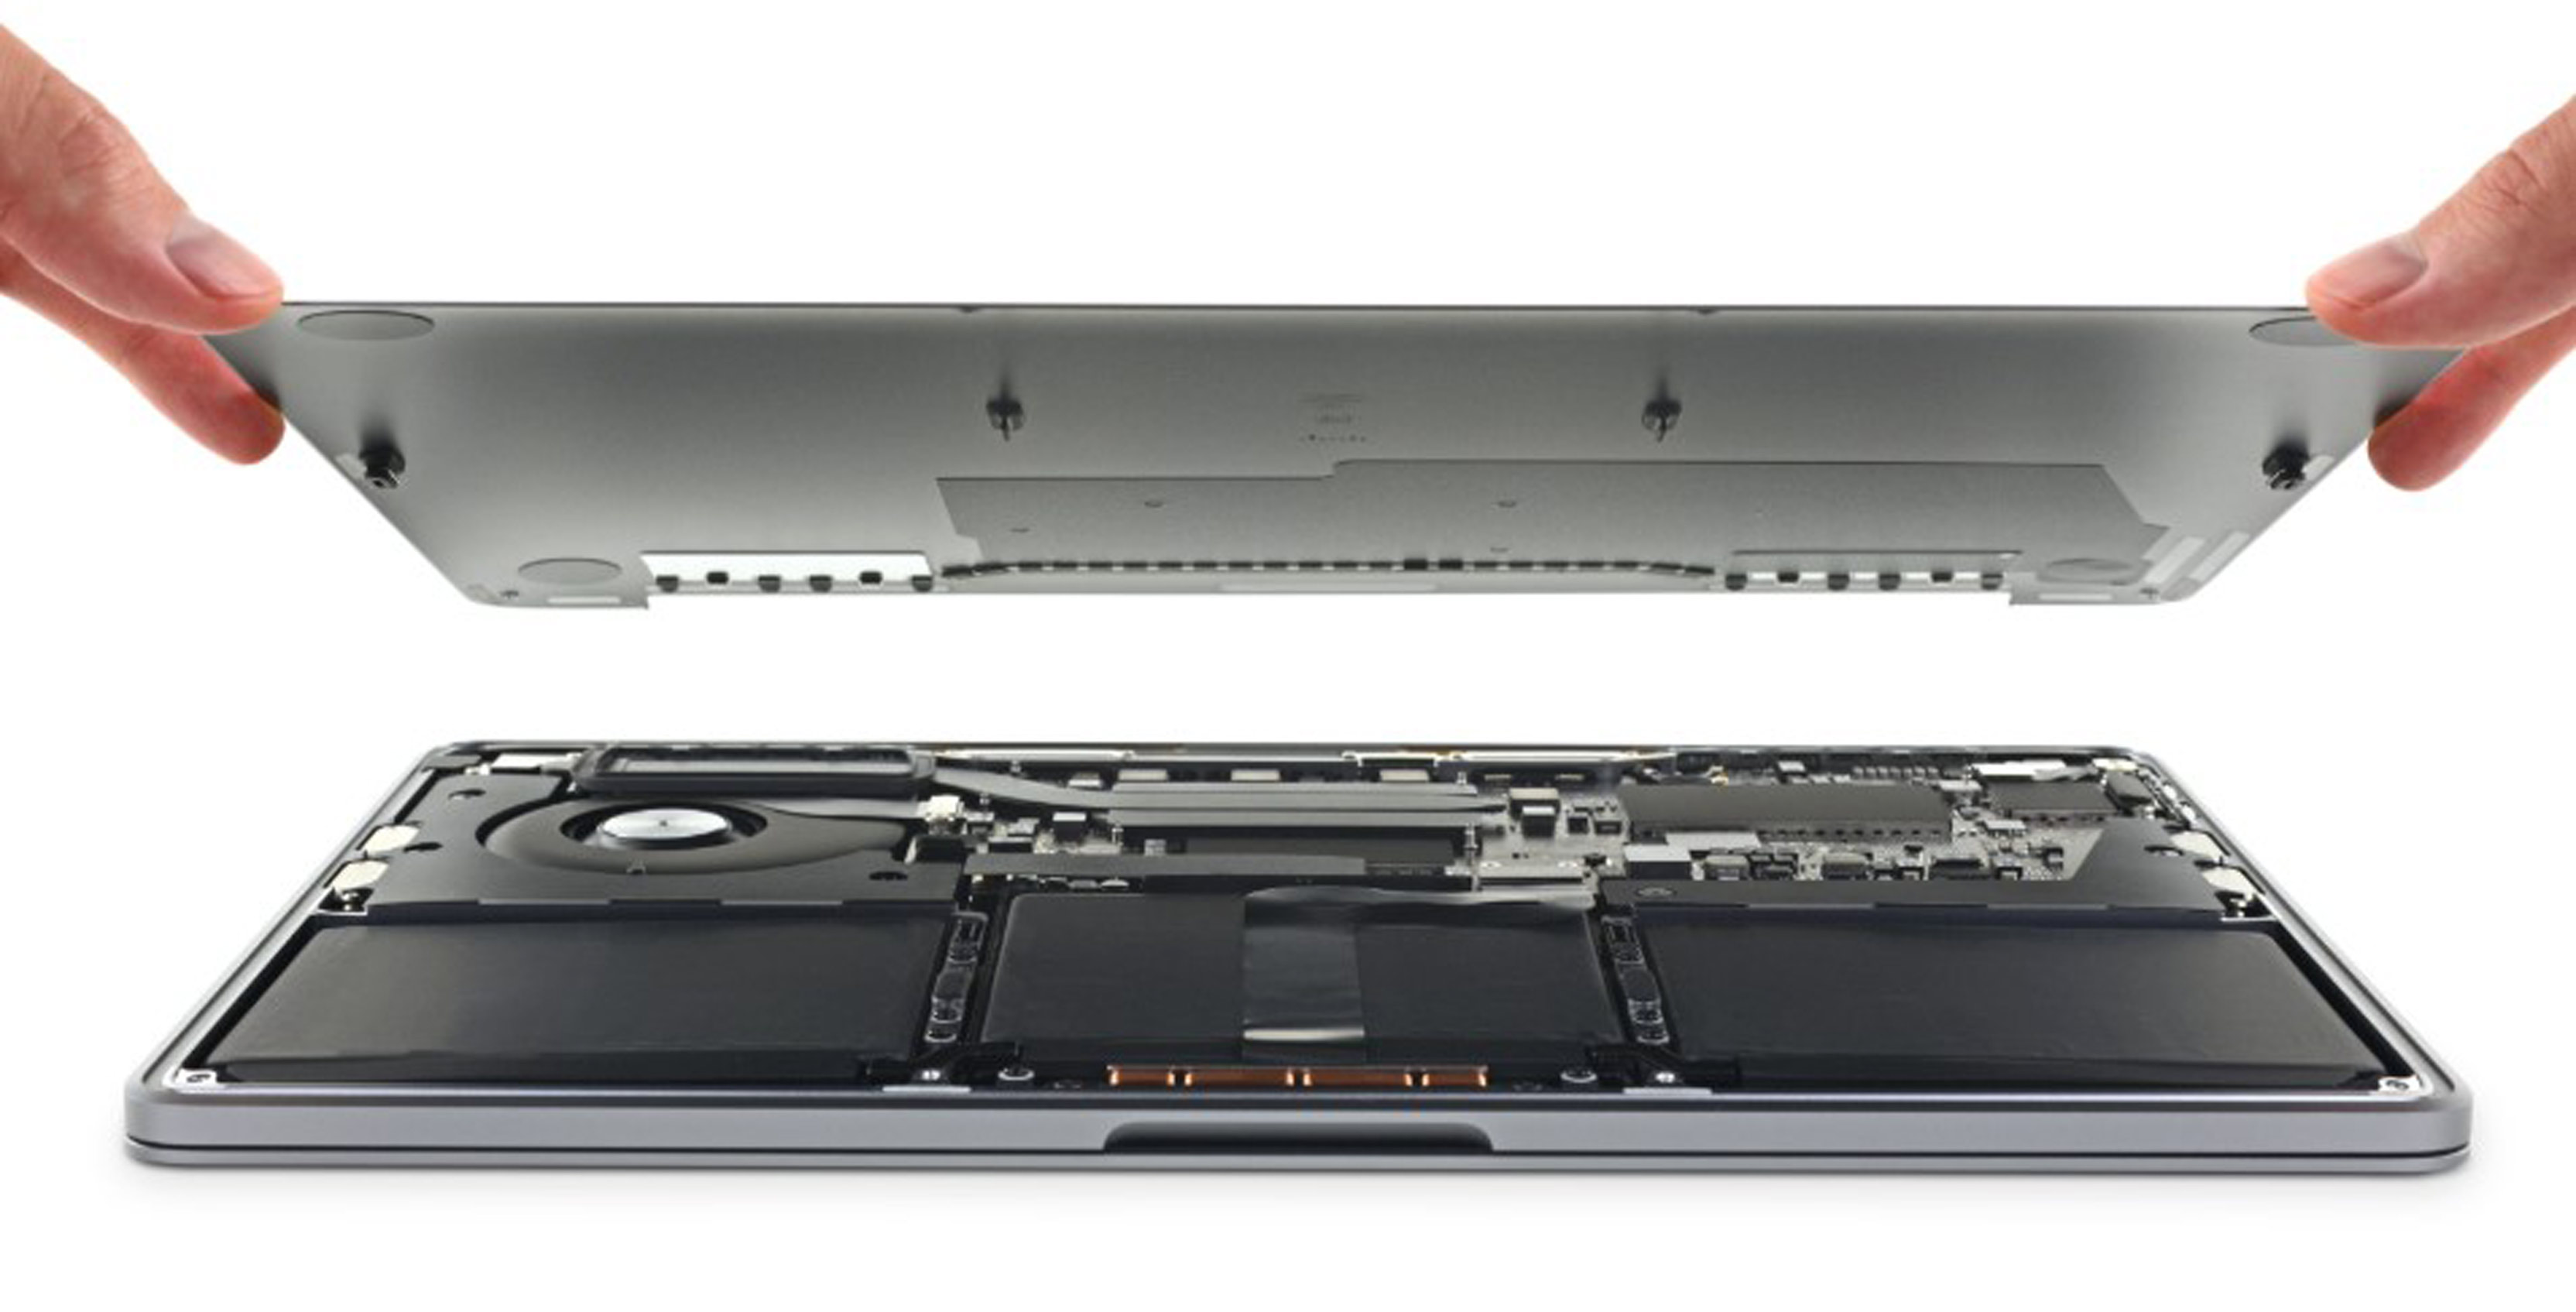 2019 Base Model Macbook Pro Features Gen 3 5 Butterfly Keyboard